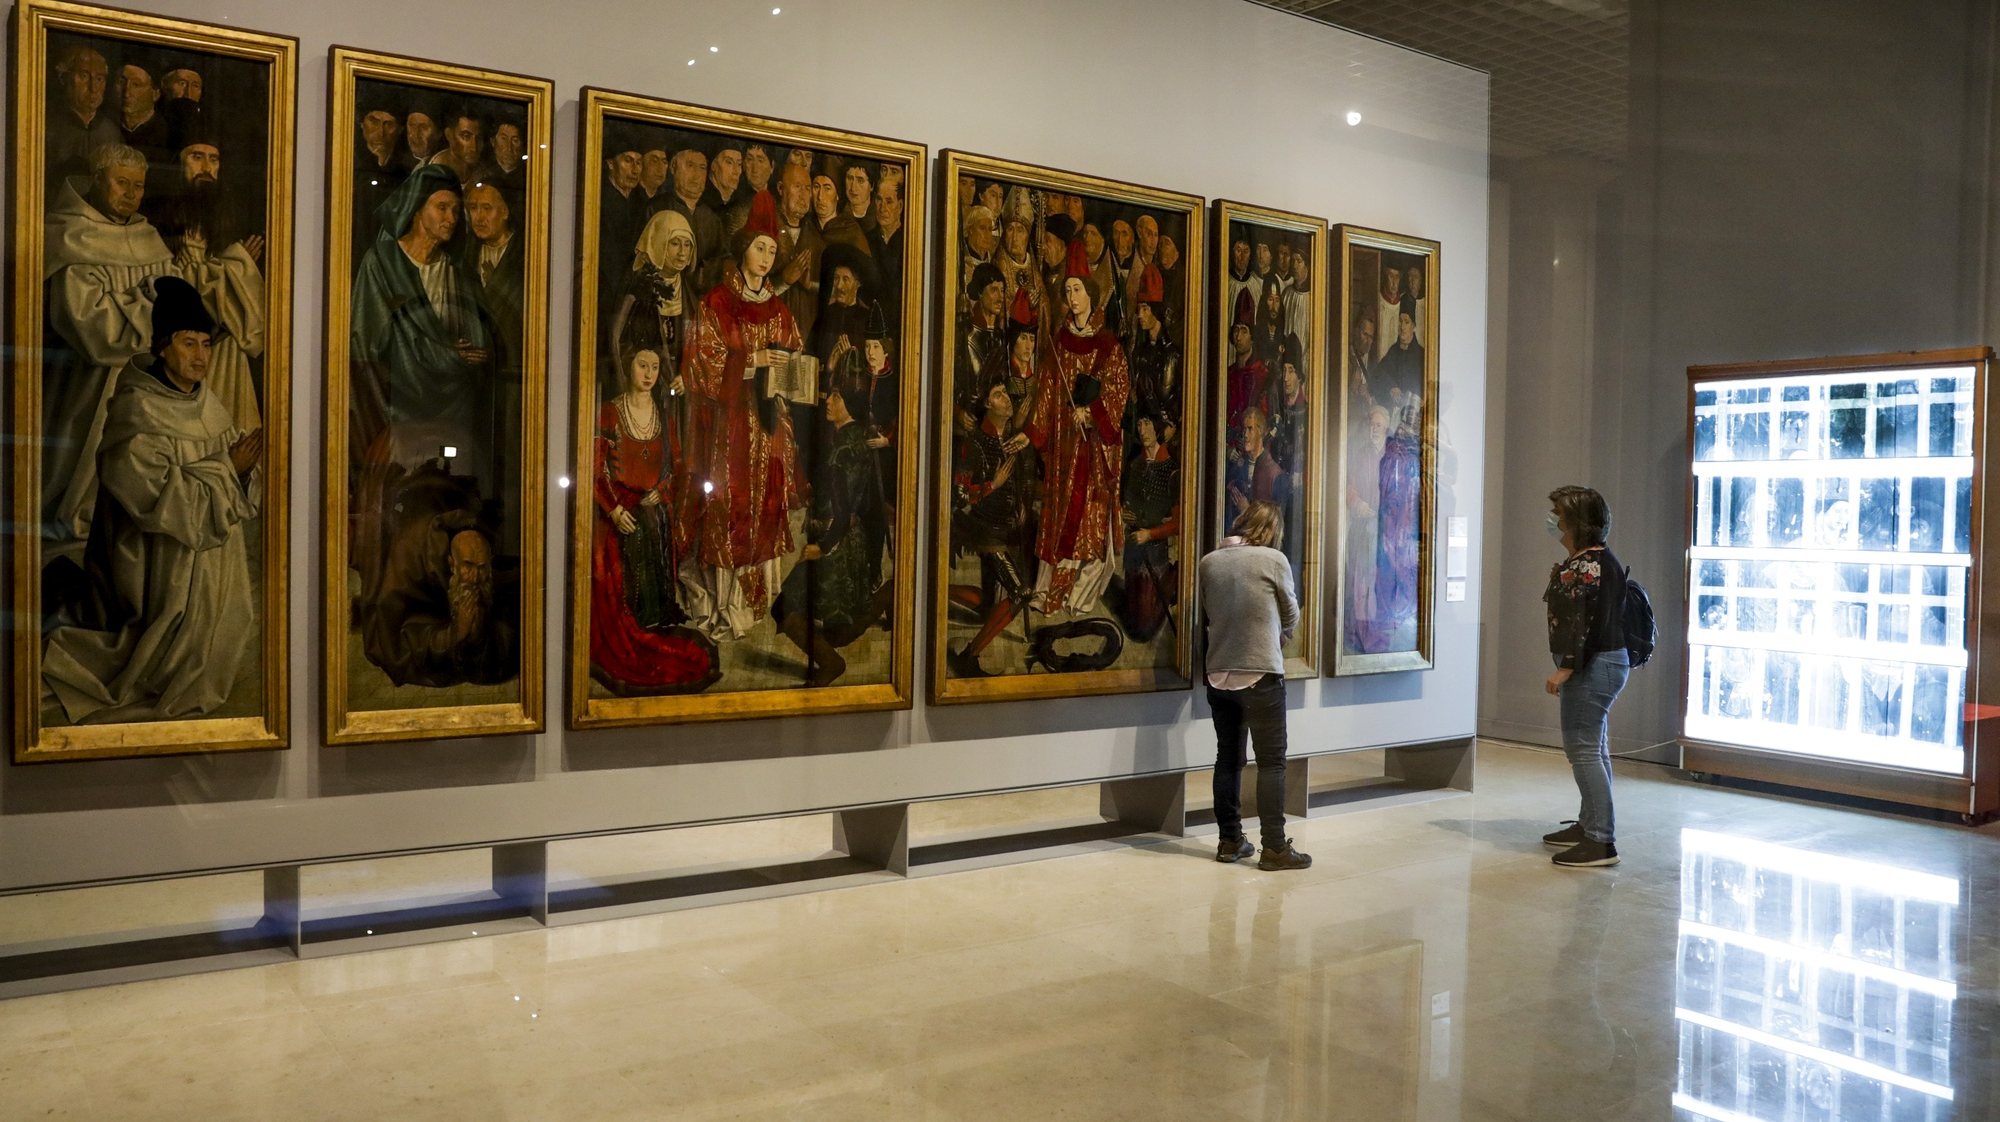 Técnicos de restauro observam o espaço de restauro dos &quot;Painéis de São Vicente&quot; no Museu Nacional de Arte Antiga, no Dia Internacional dos Museus em Lisboa, 18 de maio de 2020. TIAGO PETINGA/LUSA